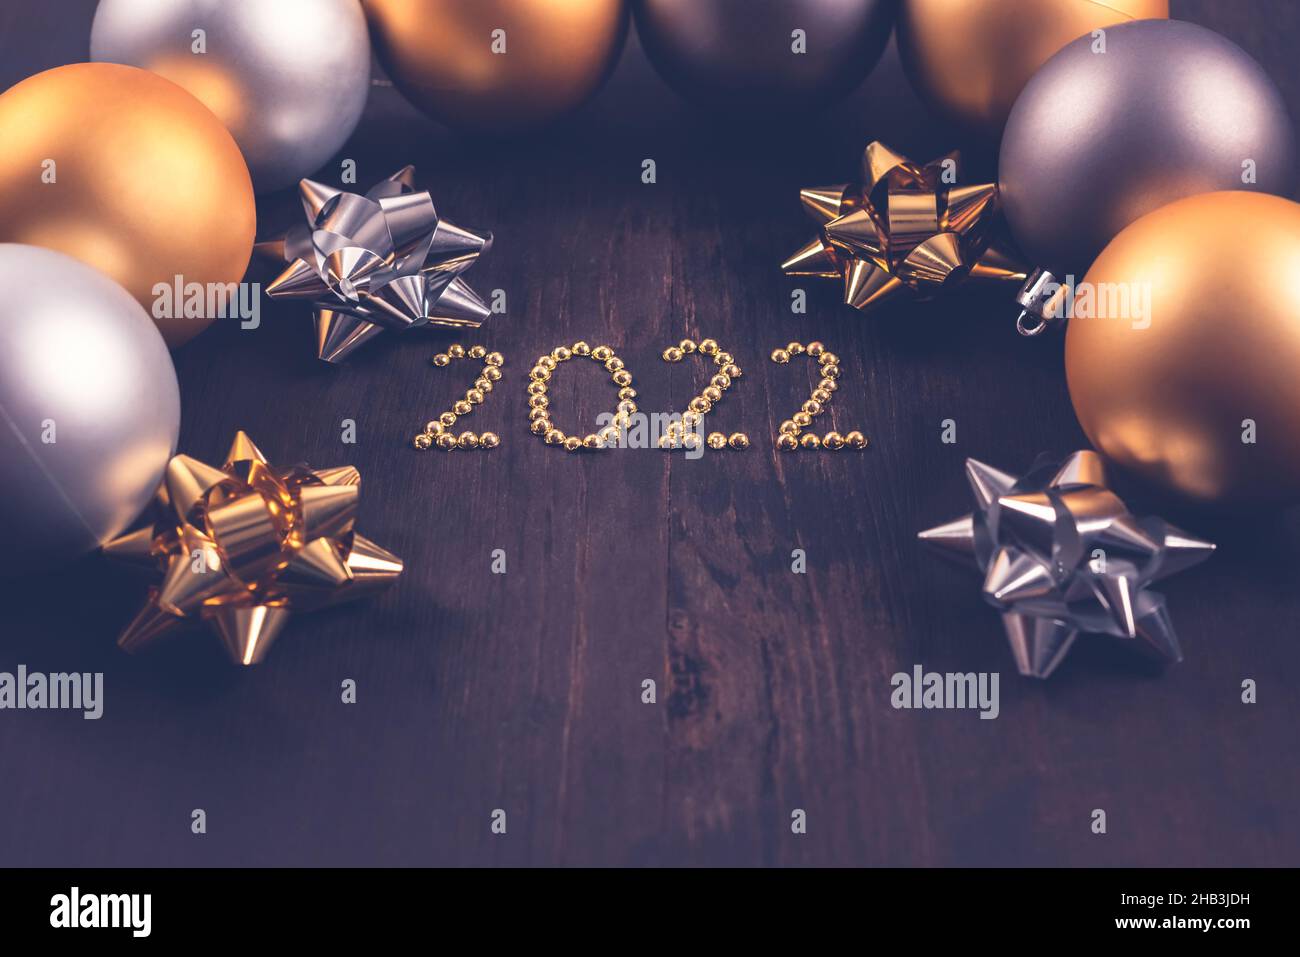 2022 Feliz año nuevo. Concepto de Navidad y fondo con adornos. Foto de stock